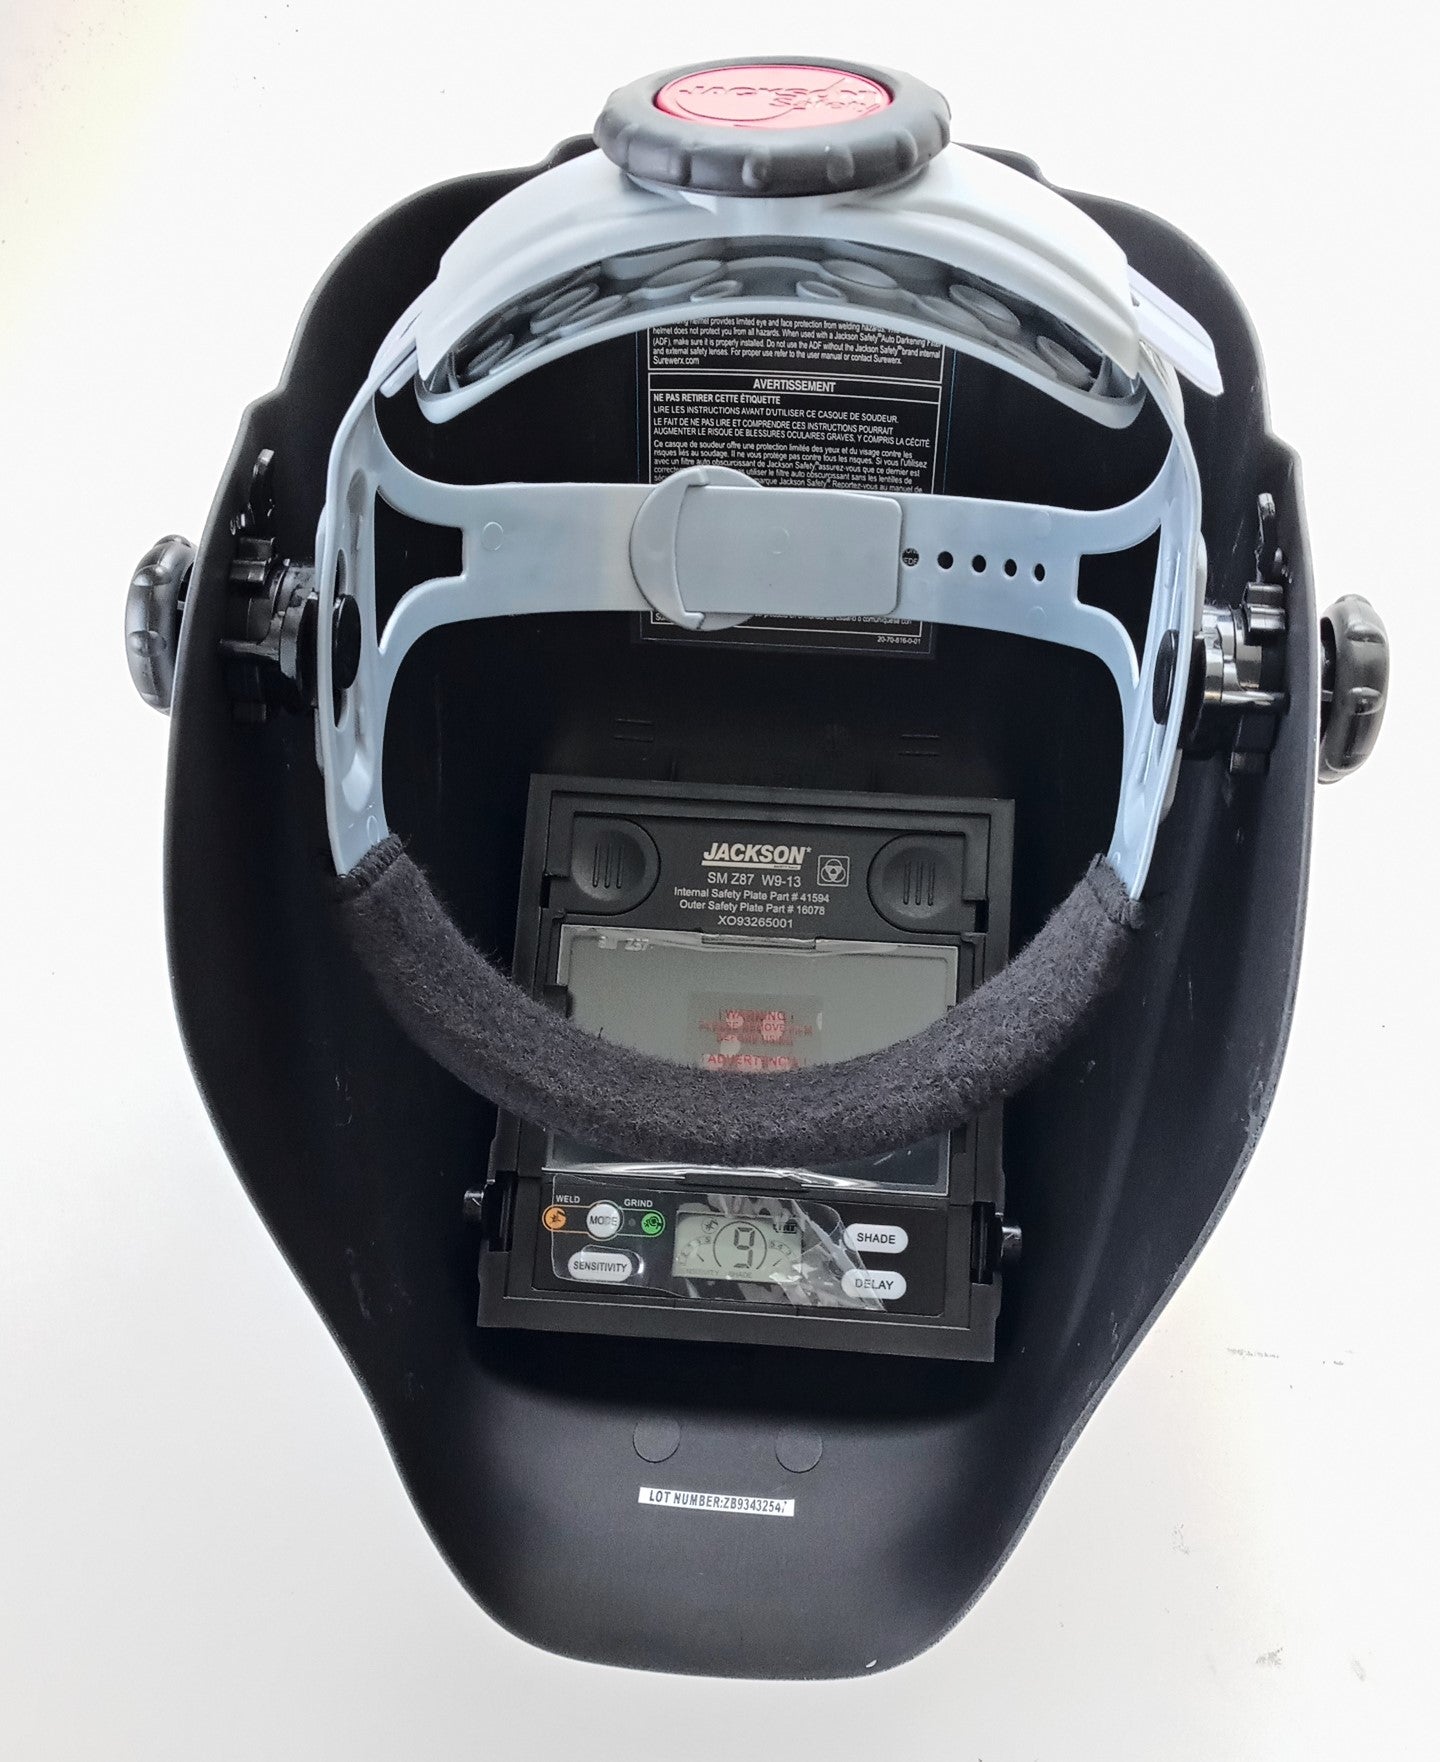 Jackson Safety Welding Helmet w/ Auto-darkening Lens